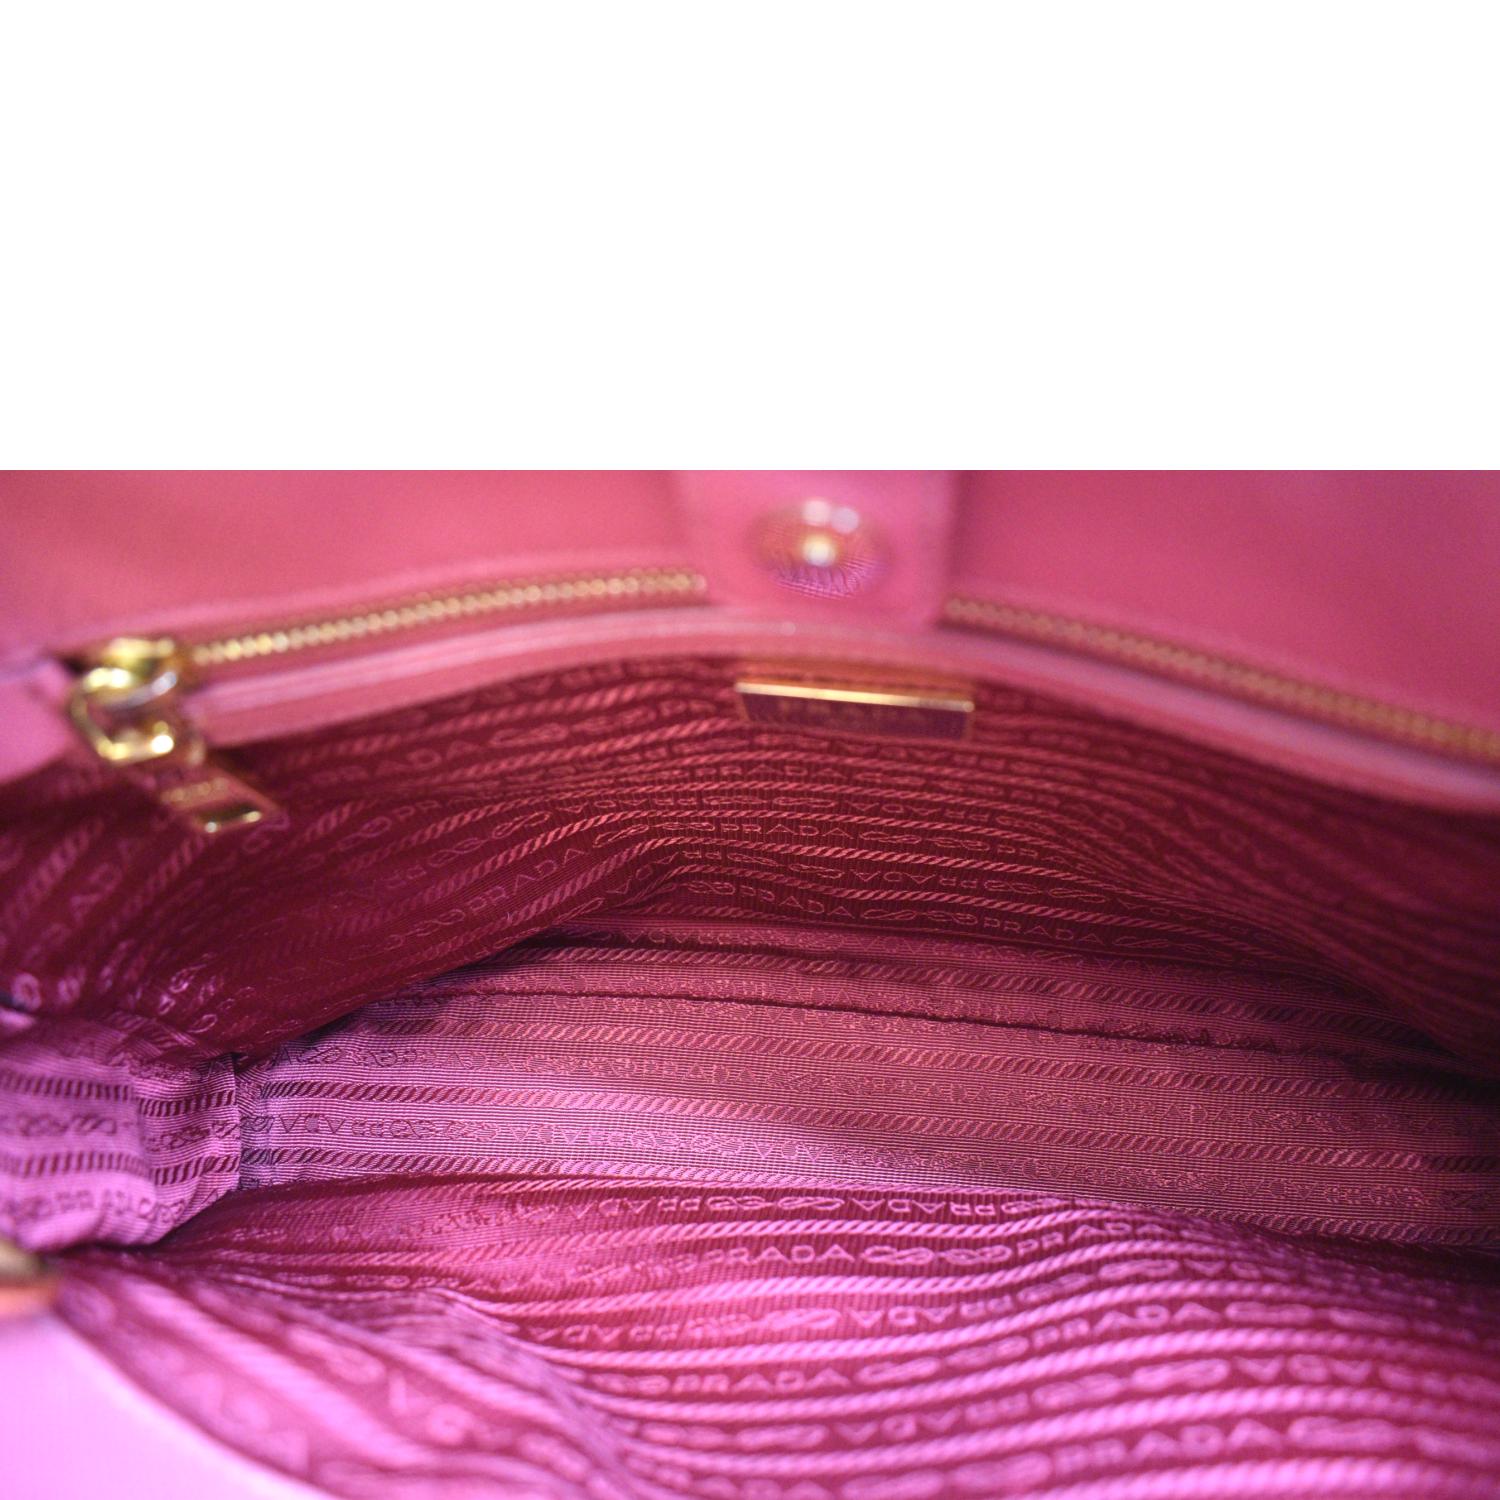 Prada Galleria Medium bag in powder pink Saffiano leather ref